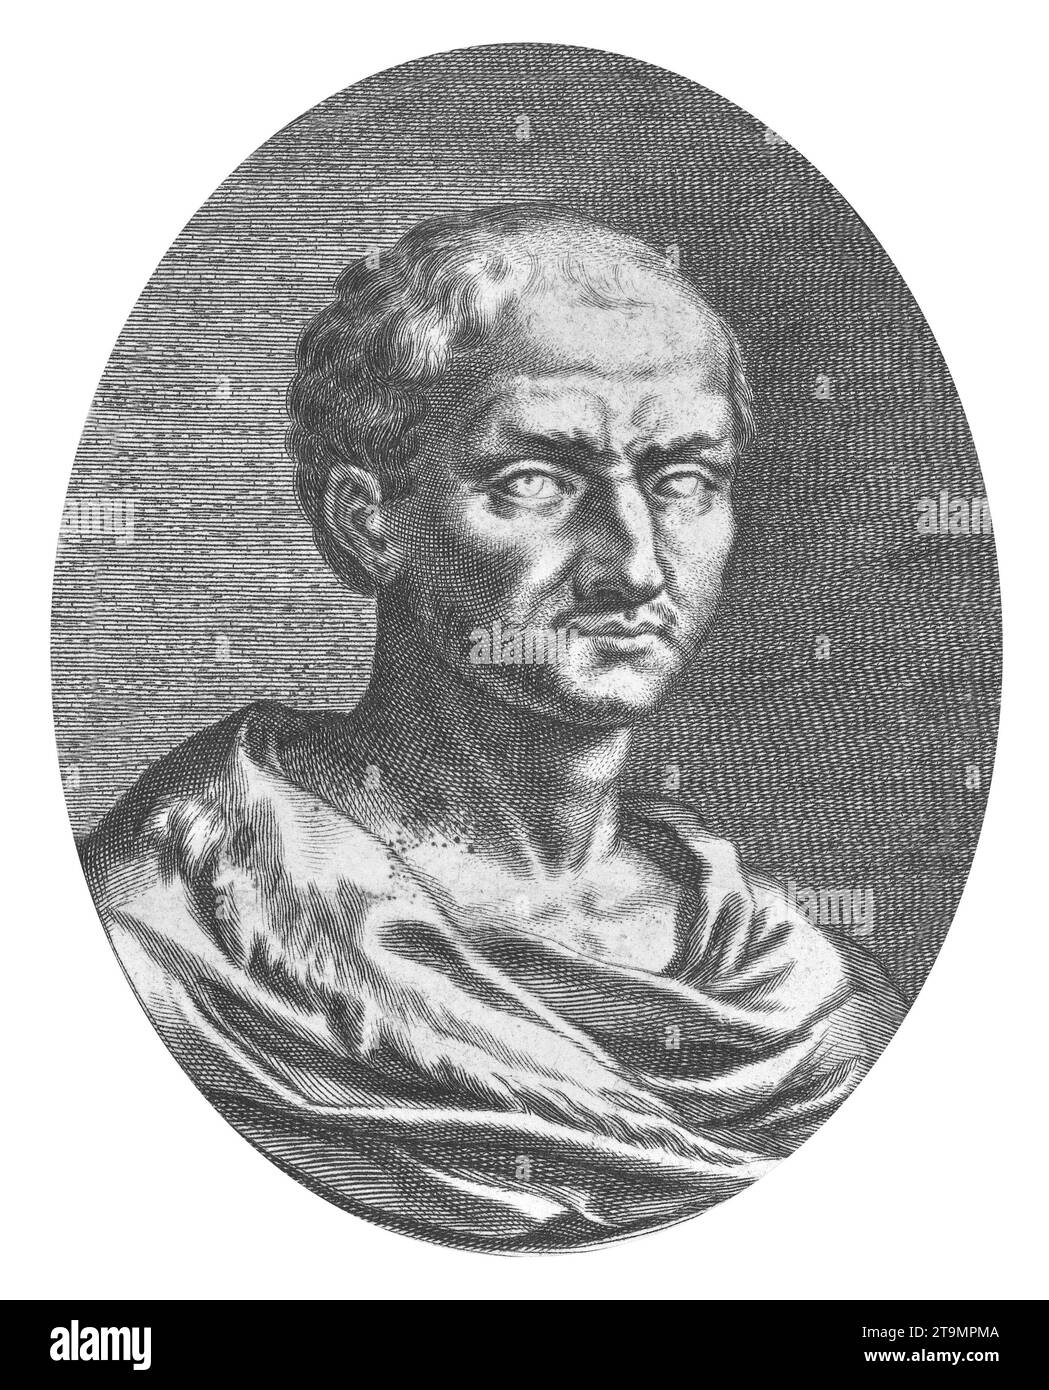 Boethius. Portrait of the Roman senator and philosopher, Anicius Manlius Severinus Boethius (c. 480–524 AD), engraving, c. 1657-1707 after a Roman sculpture. Stock Photo